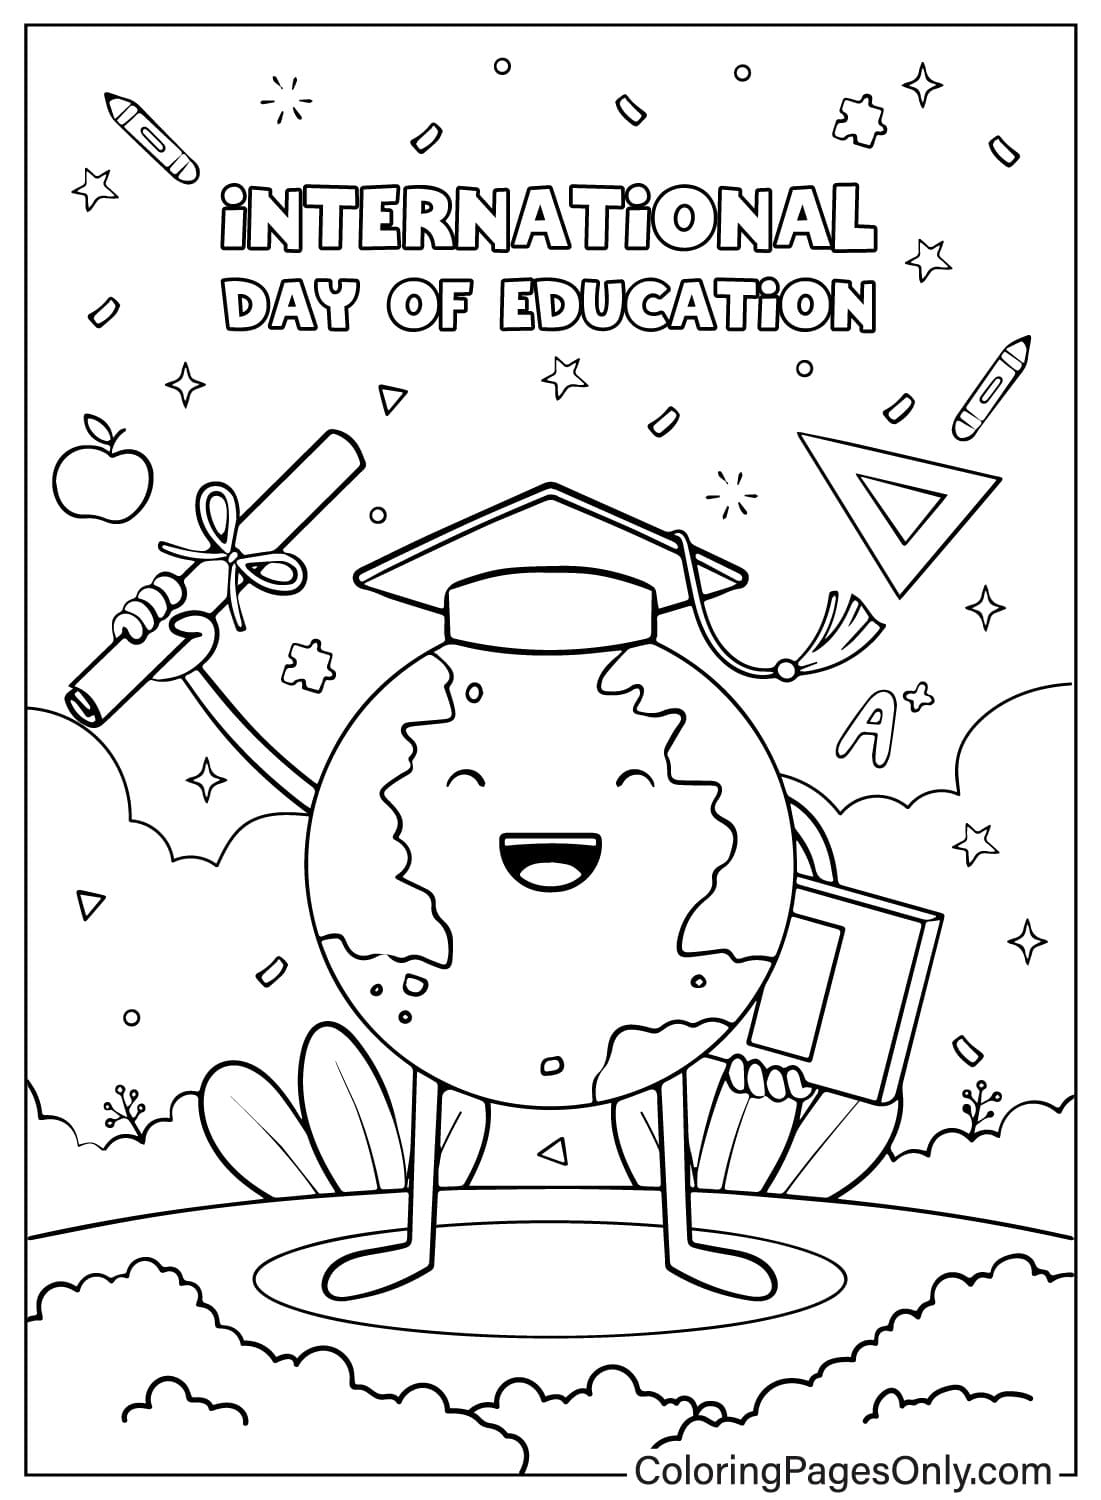 Dibujo del Día Internacional de la Educación Página para colorear del Día Internacional de la Educación